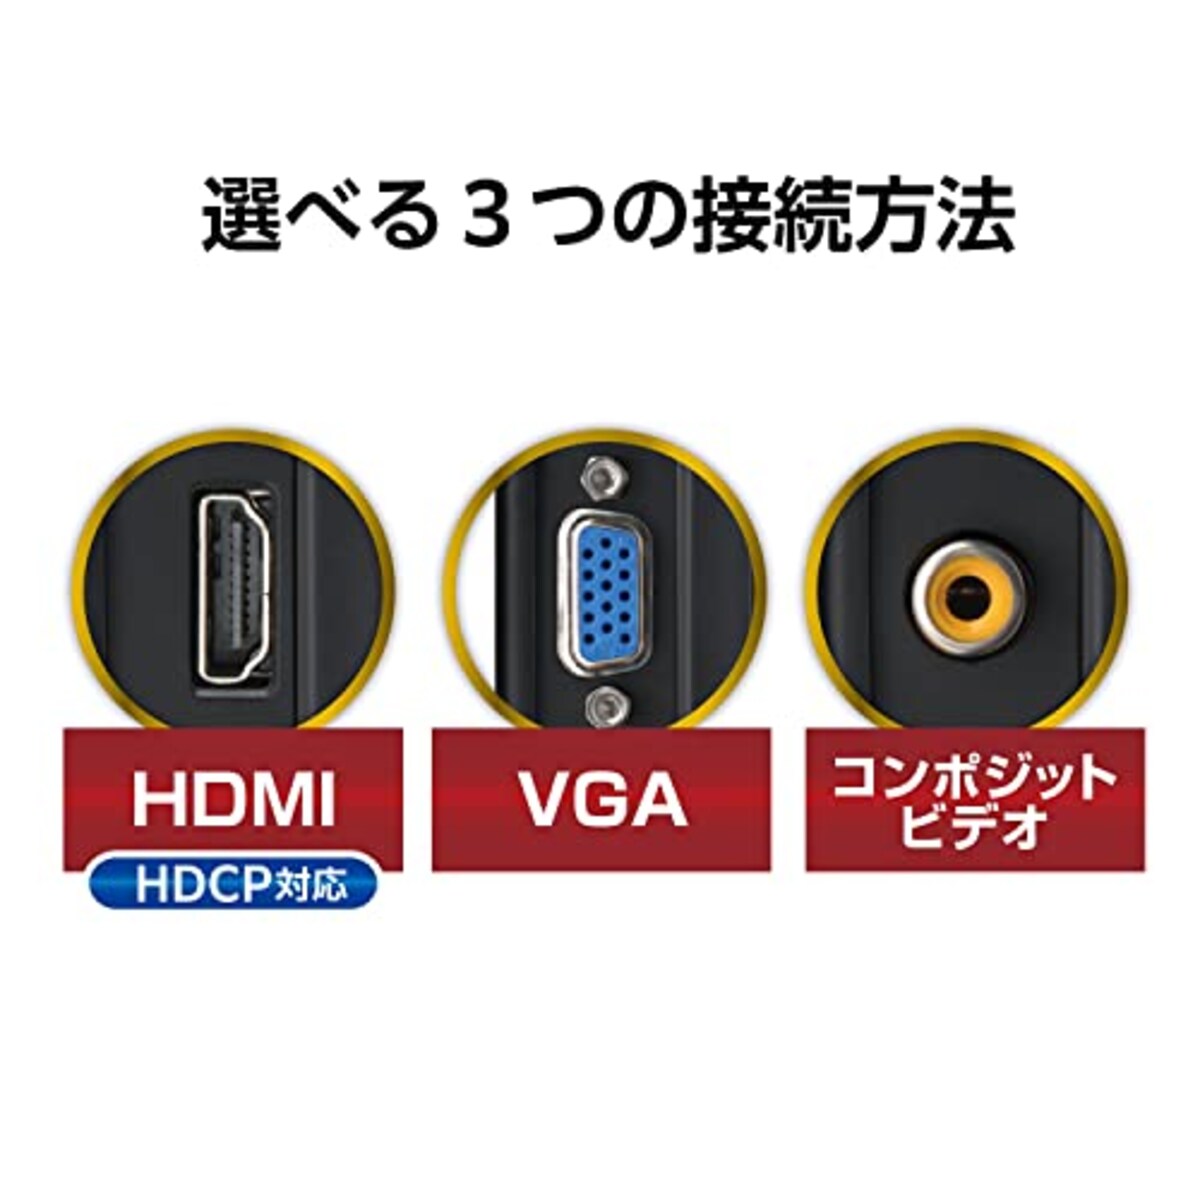  センチュリー 8インチHDMIマルチモニターHDMI/VGA/コンポジット入力対応ブラック LCD-8000VH4B_FP画像7 